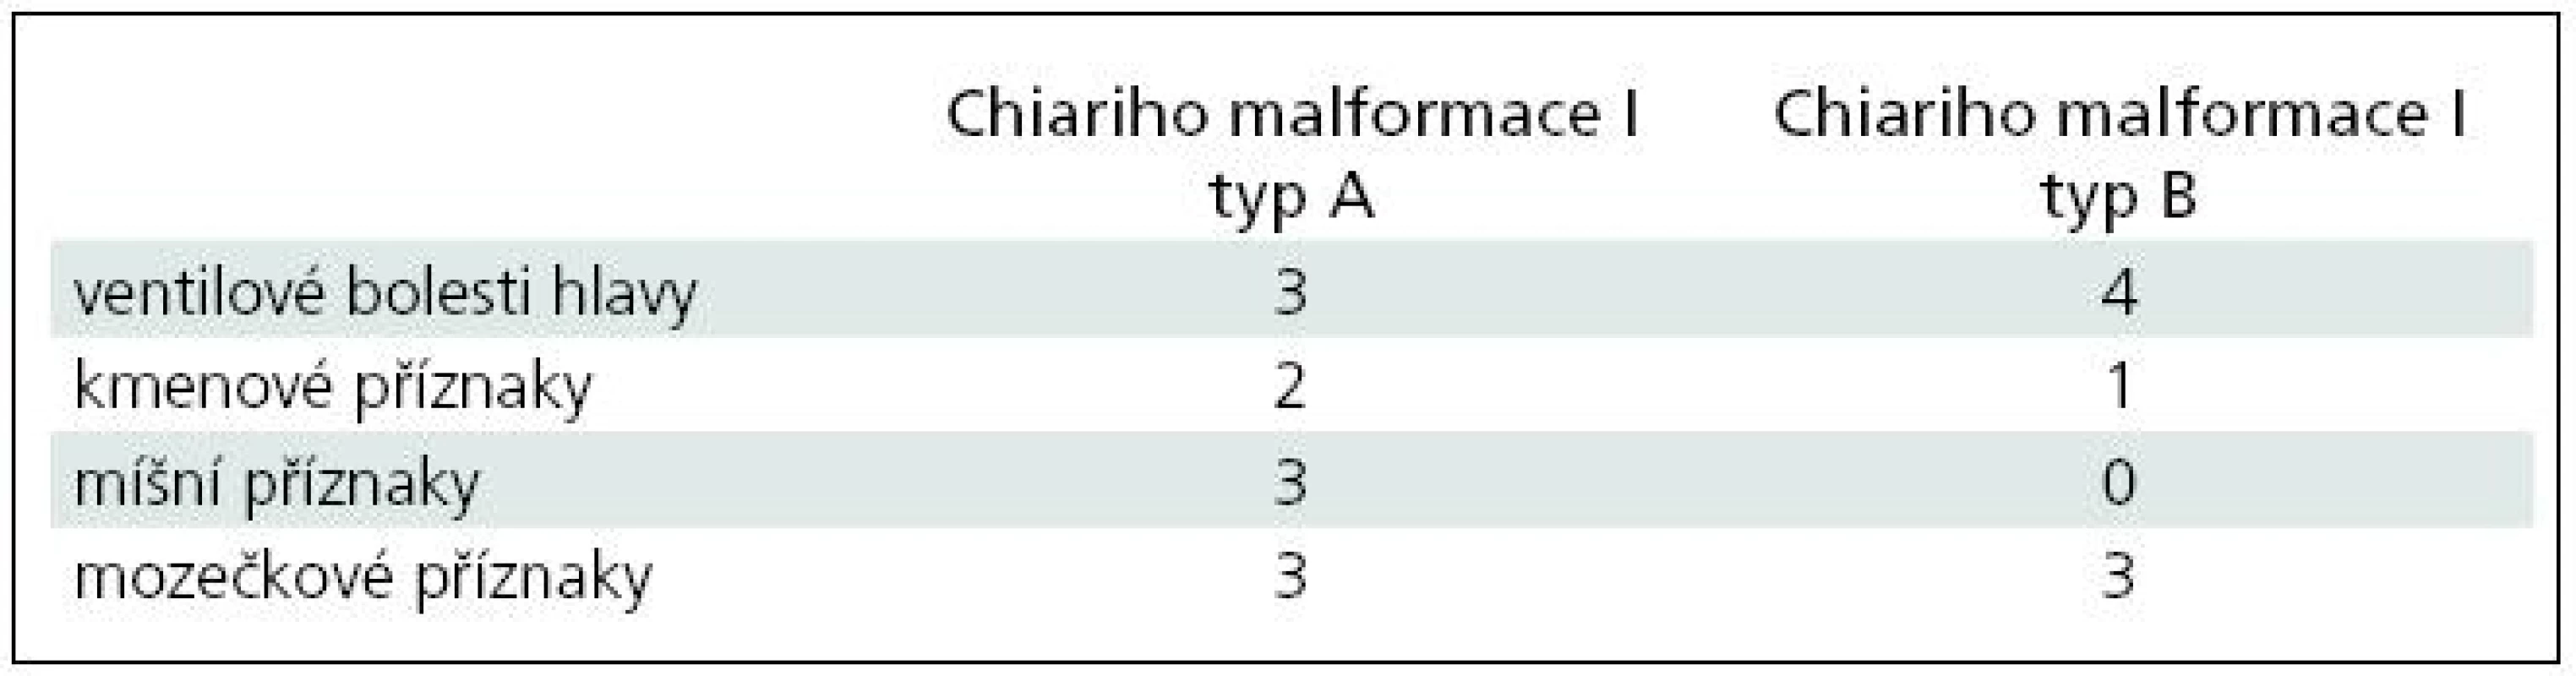 Klinické příznaky Chiariho malformace typu I.